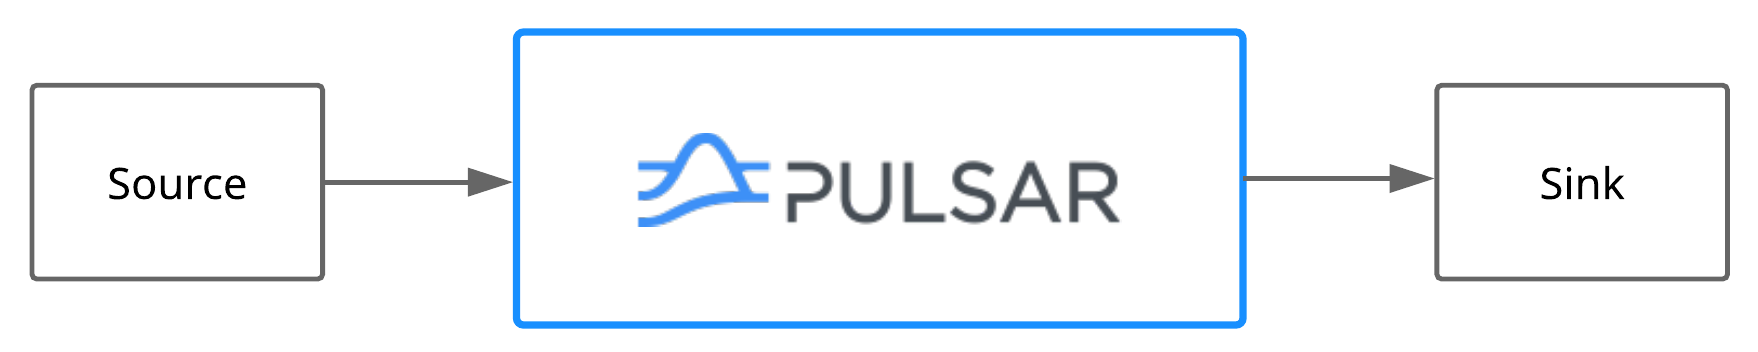 Pulsar IO diagram